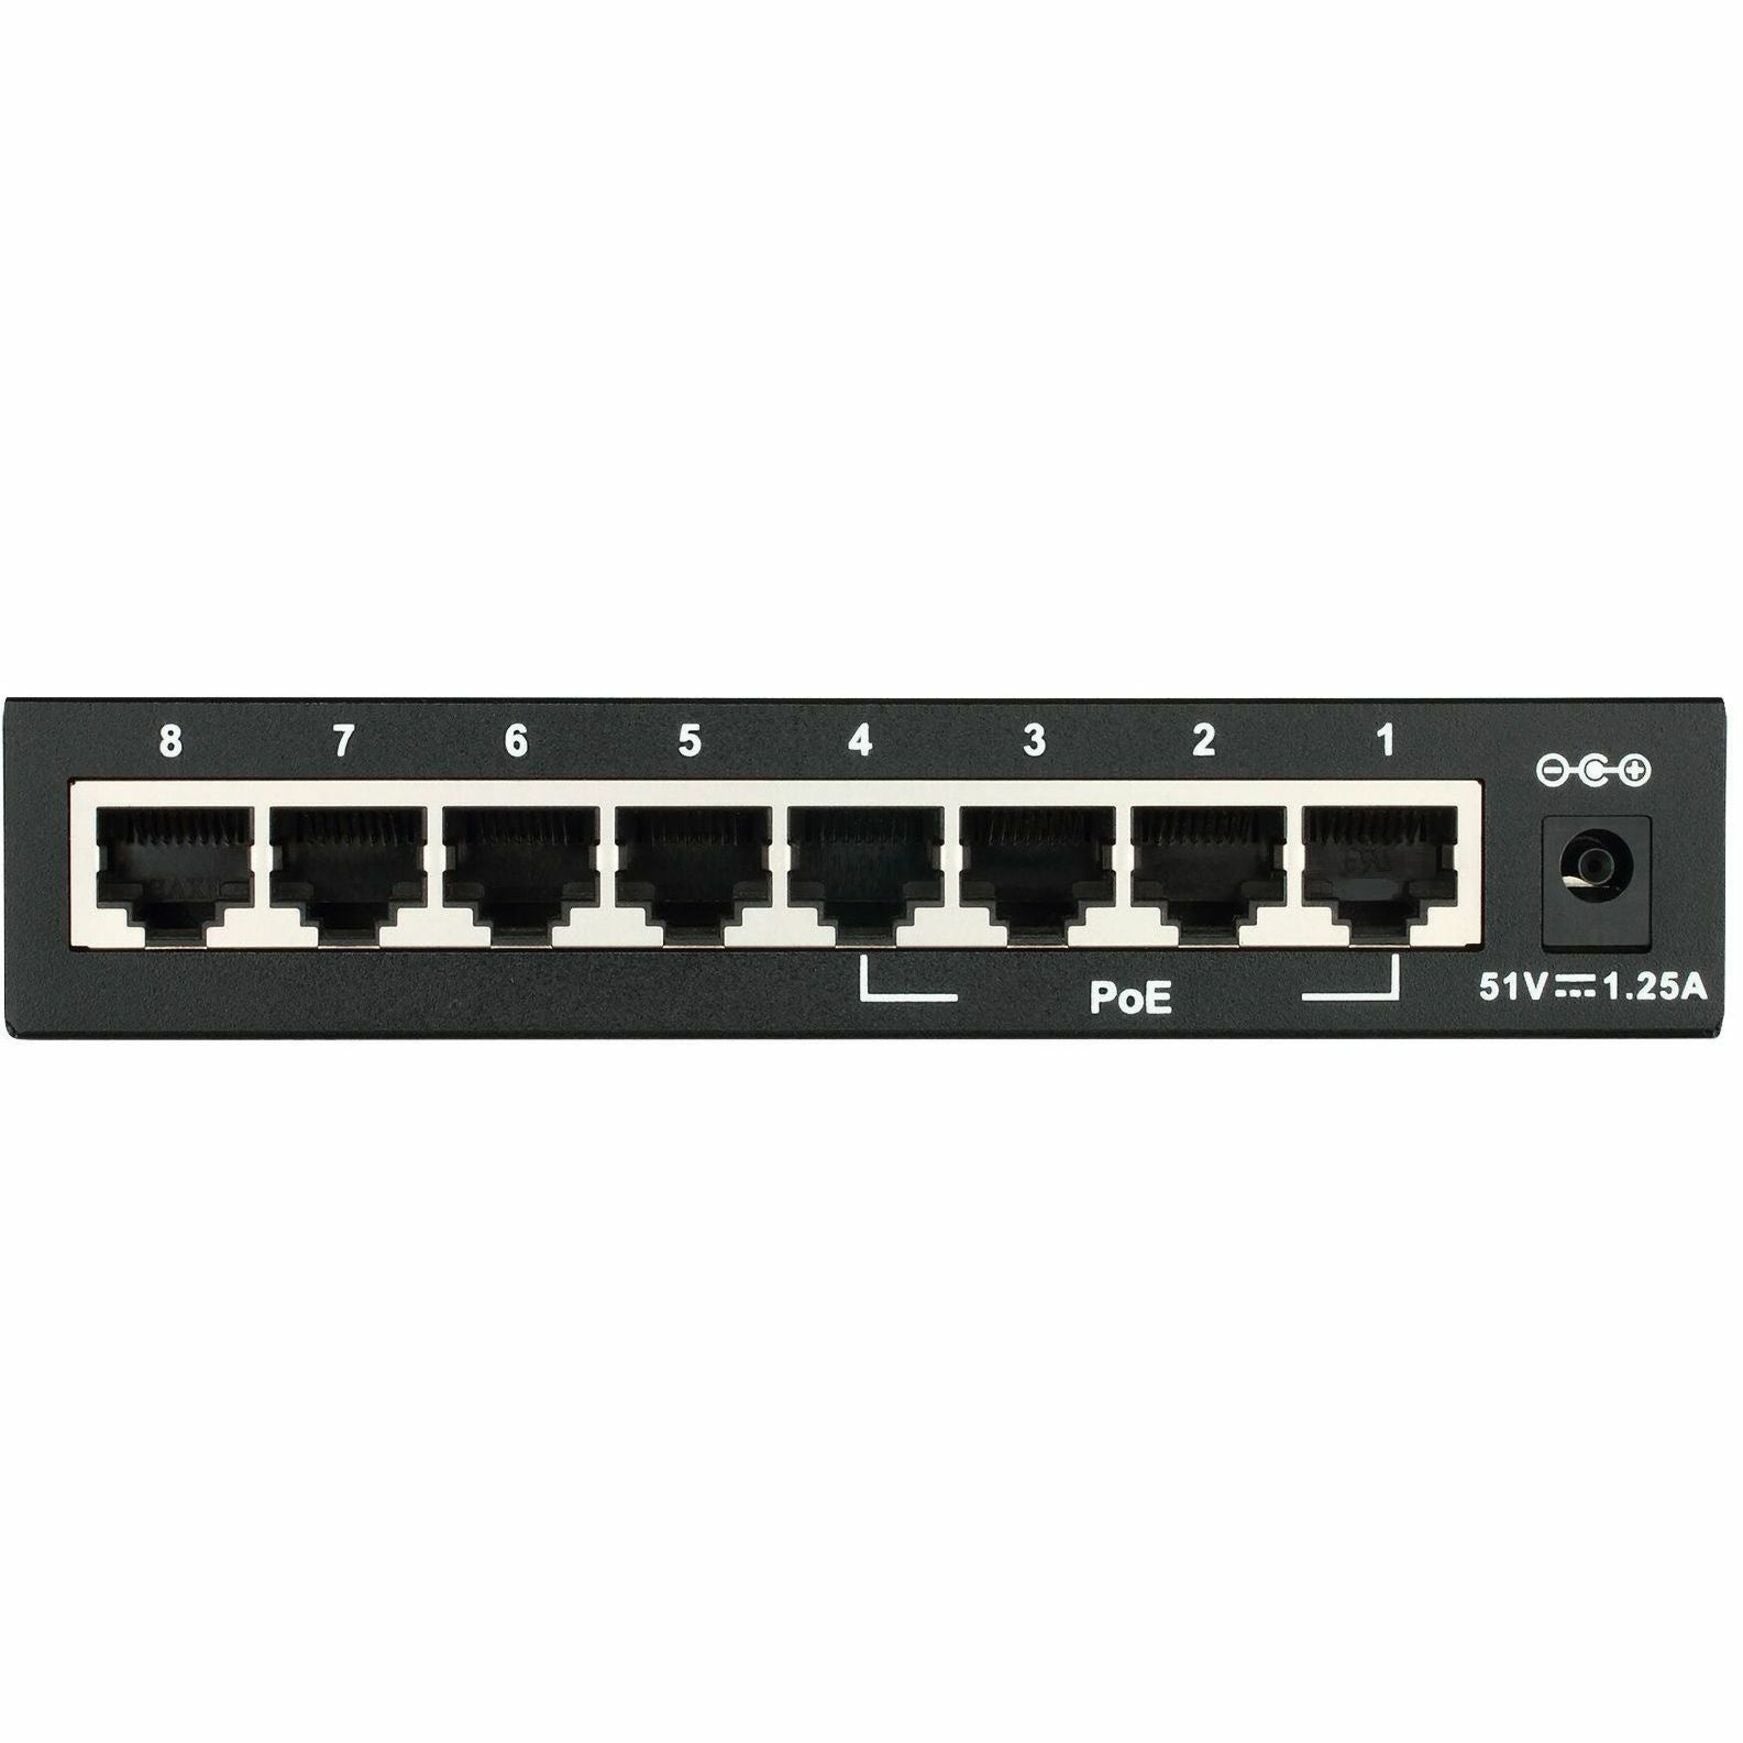 D-Link DES-1008PA 8-Port Fast Ethernet PoE Unmanaged Desktop Switch